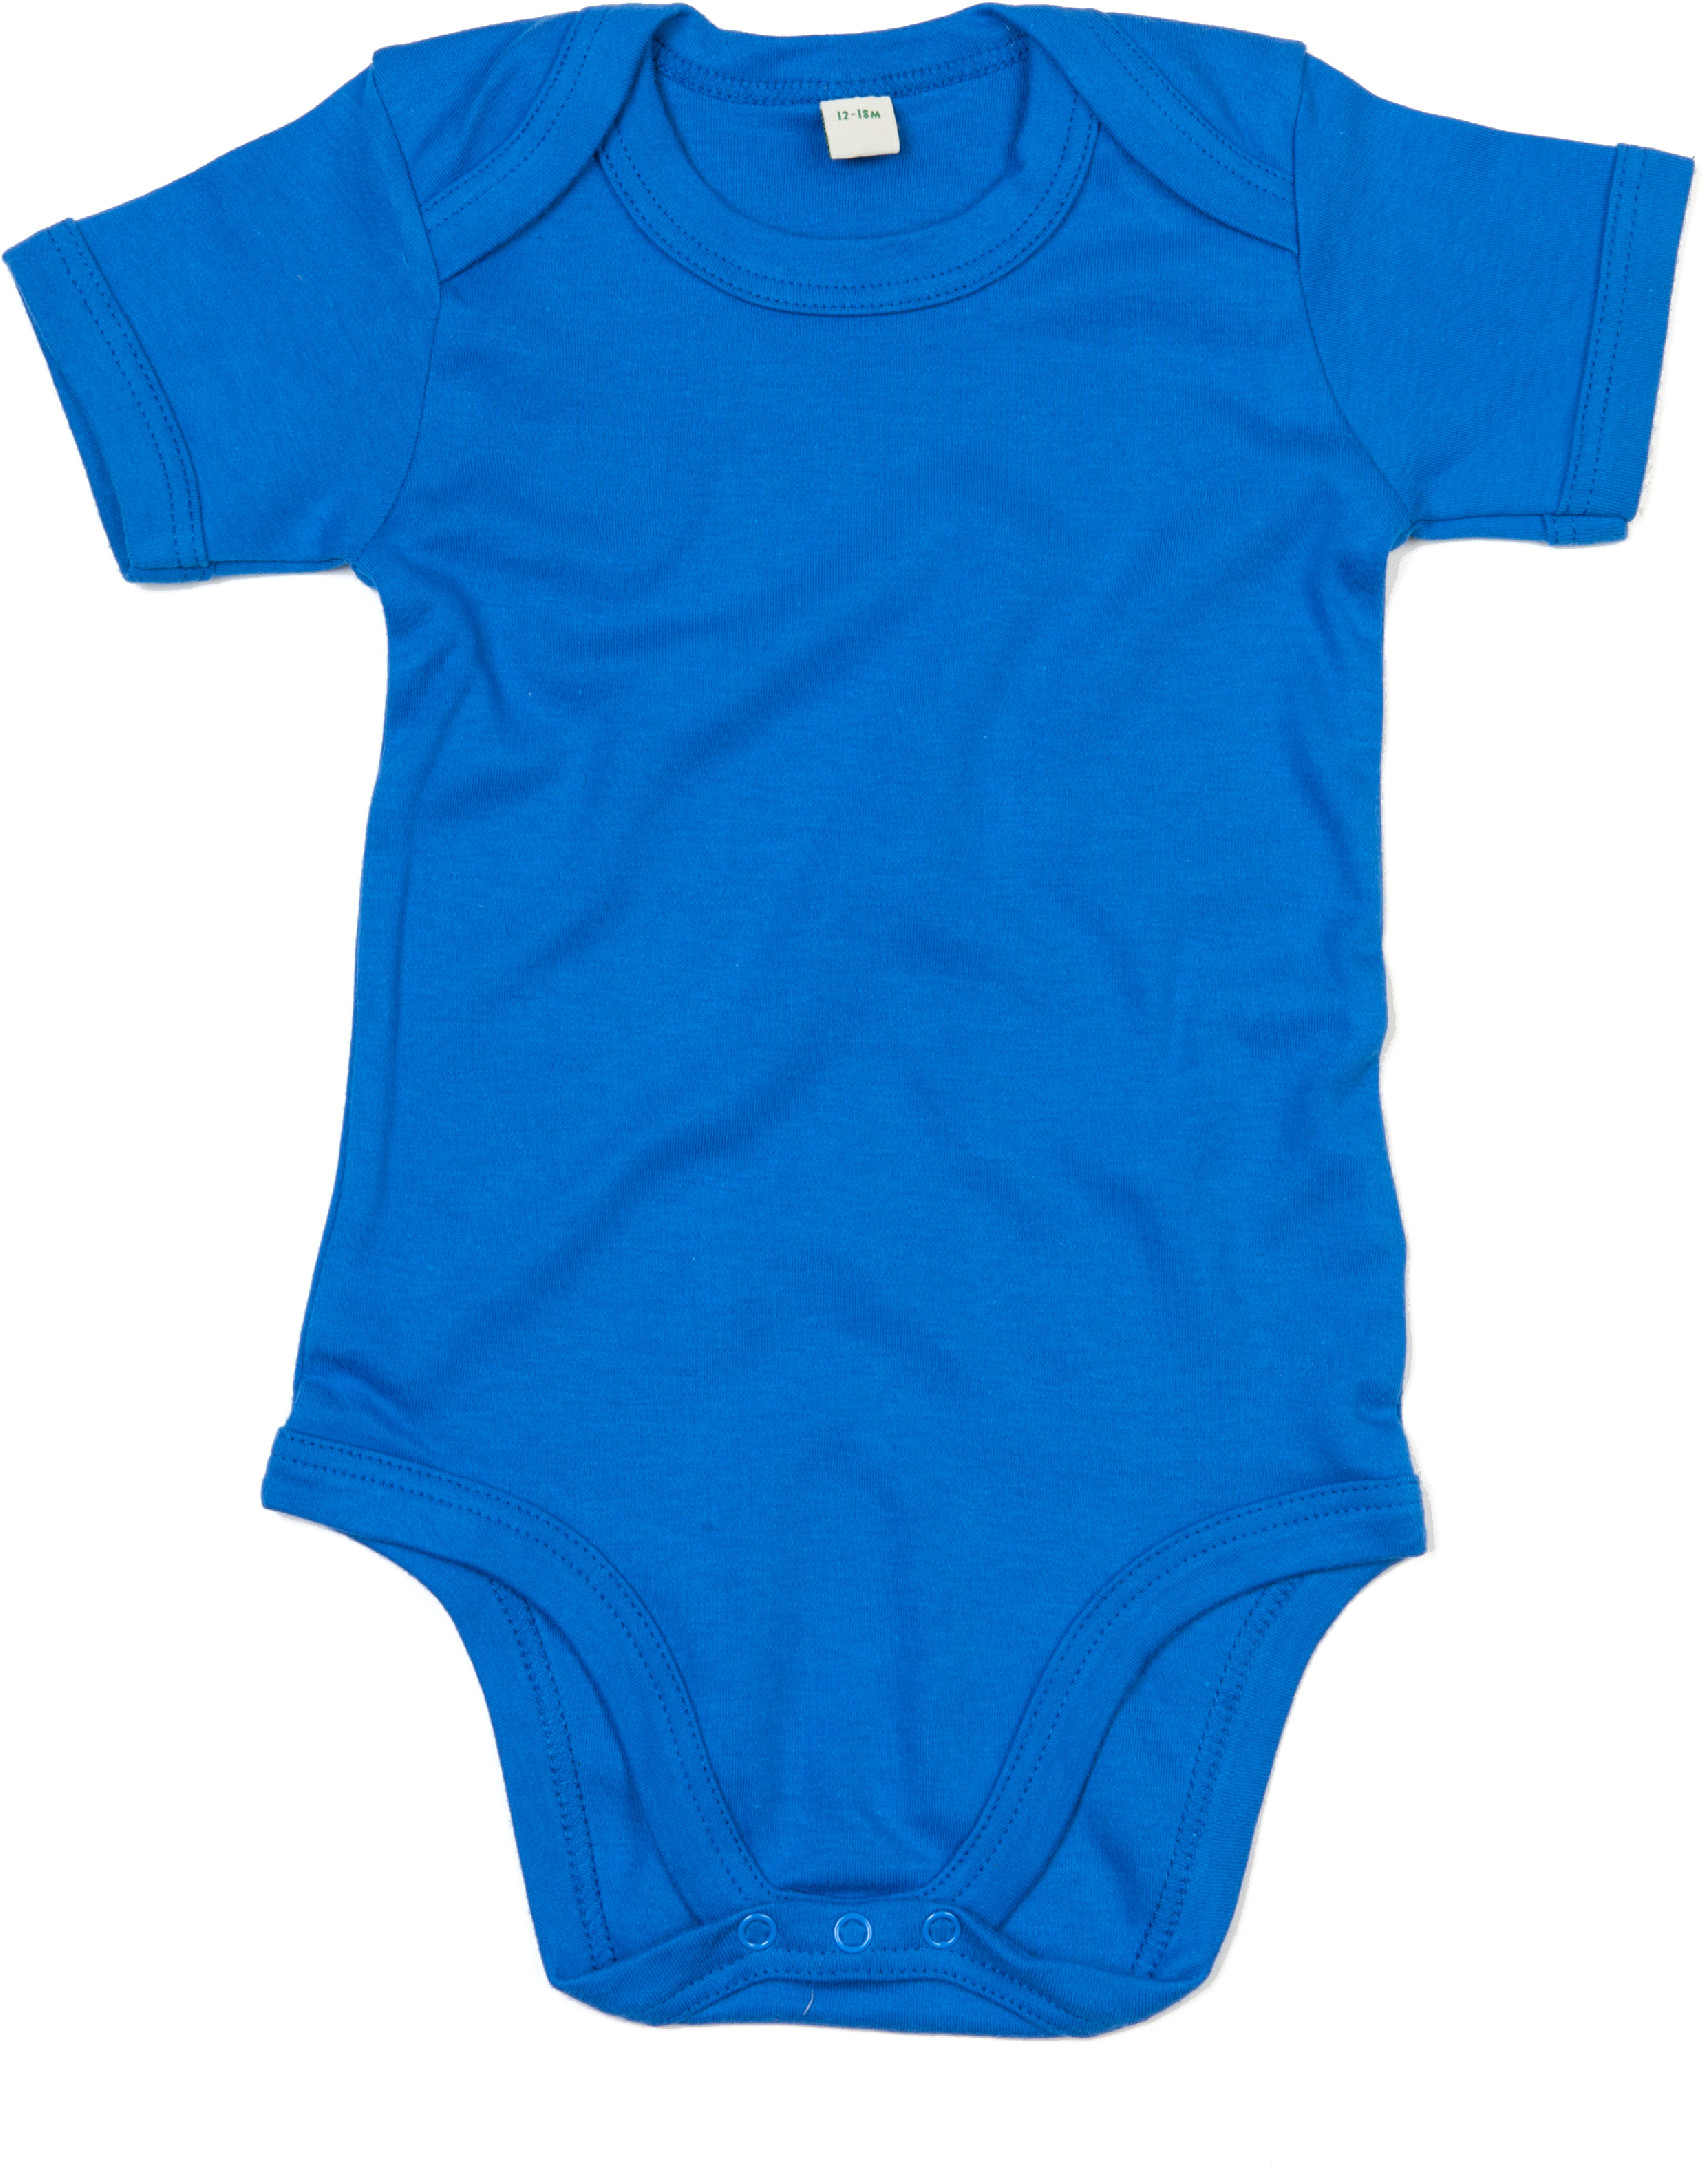 Dětské body BZ10 Barva: snorkel blue, Velikost: 3-6 měsíců